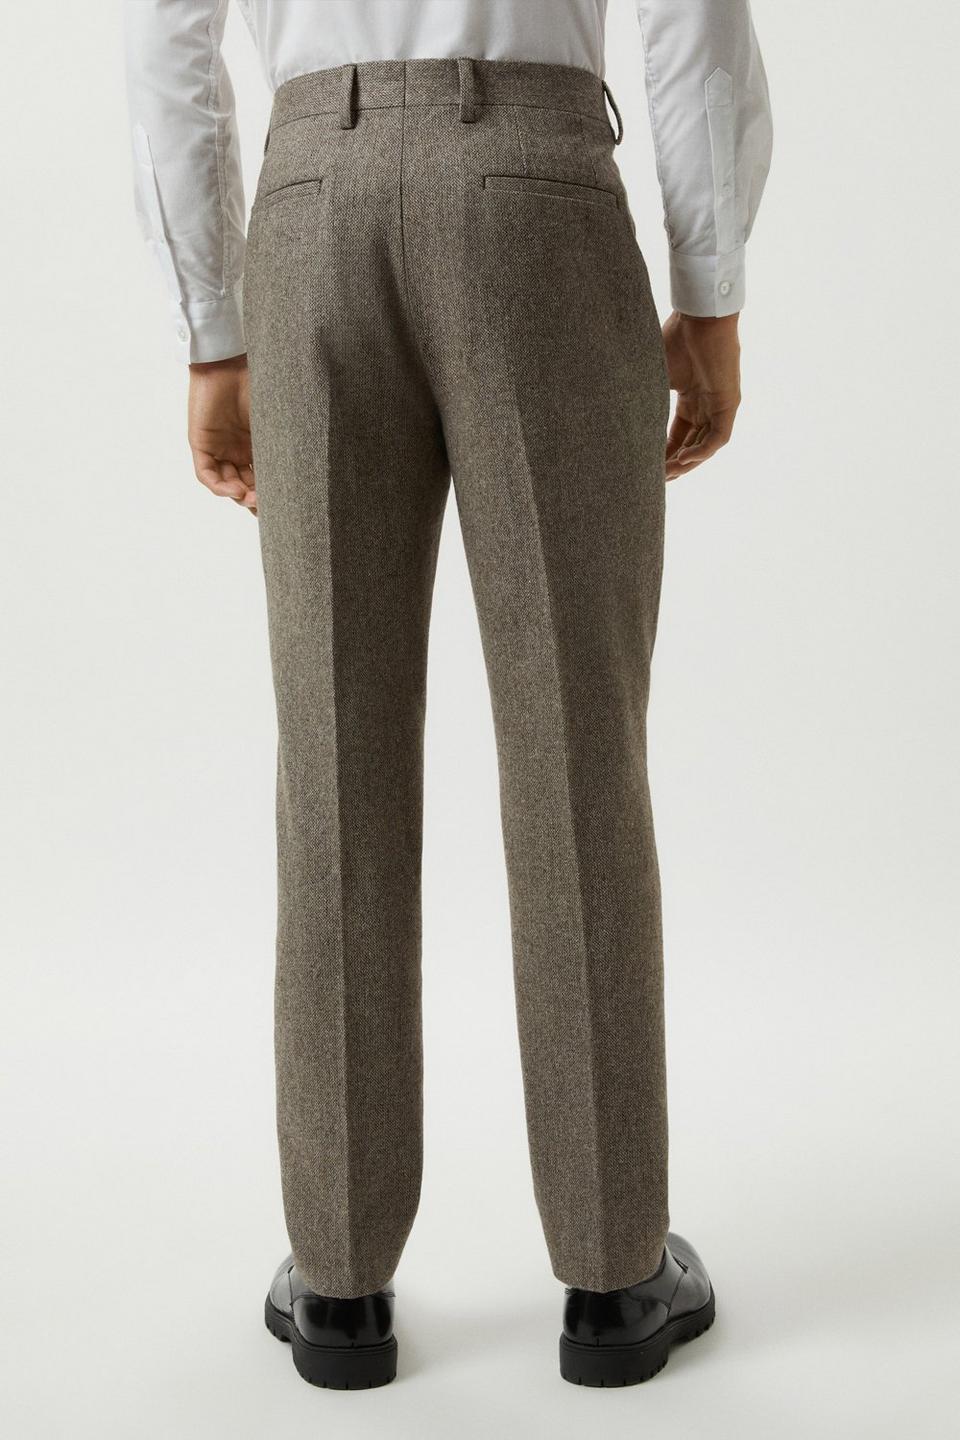 Suits | Slim Fit Neutral Basketweave Tweed Suit Trousers | Burton